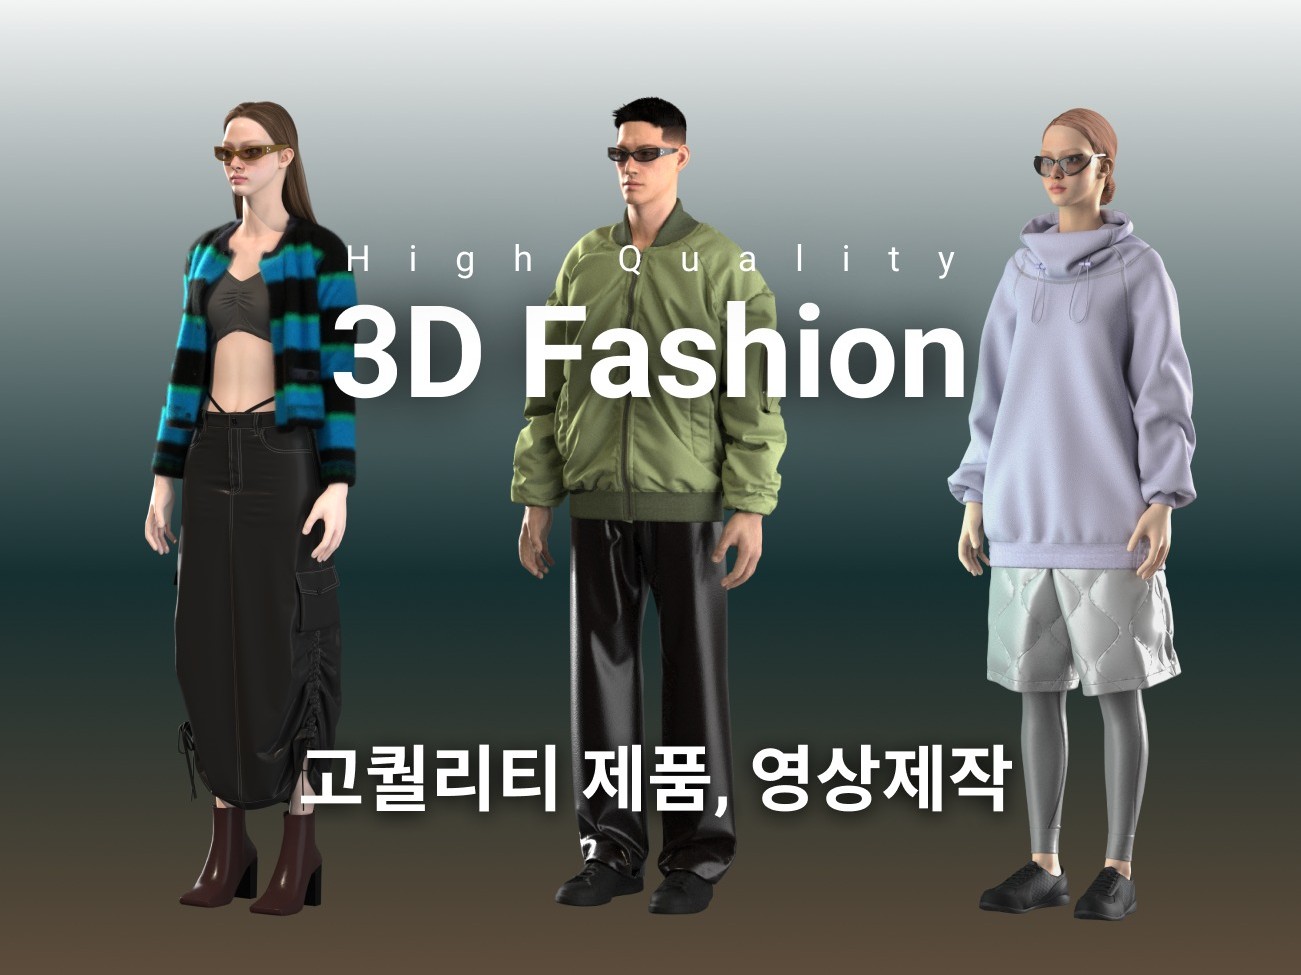 CLO 3D 고퀄리티 패션 3D 의상 샘플, 영상 제작